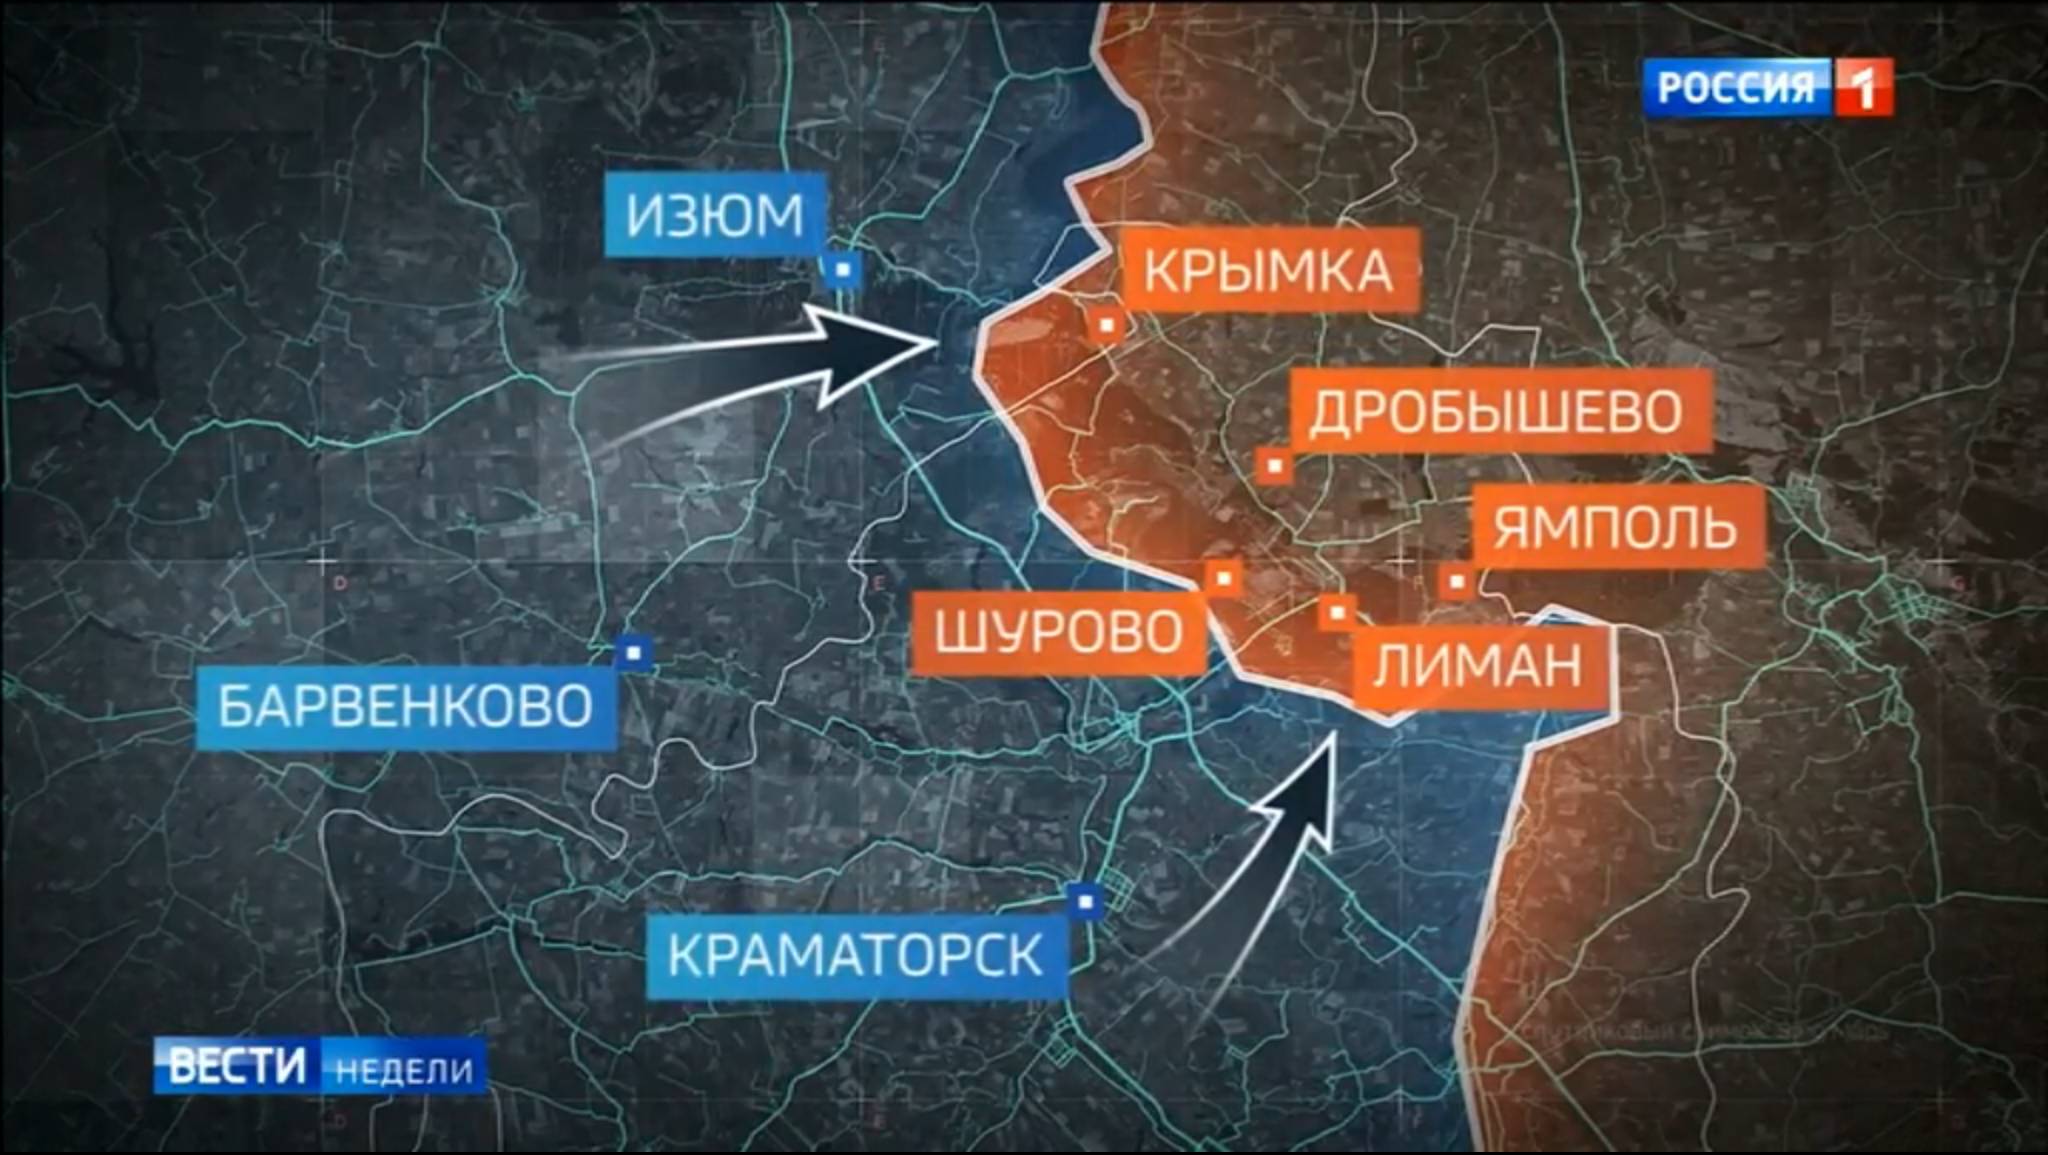 Mapa frontu wschodniego w Ukrainie pokazująca kierunki ukraińskiego natarcia